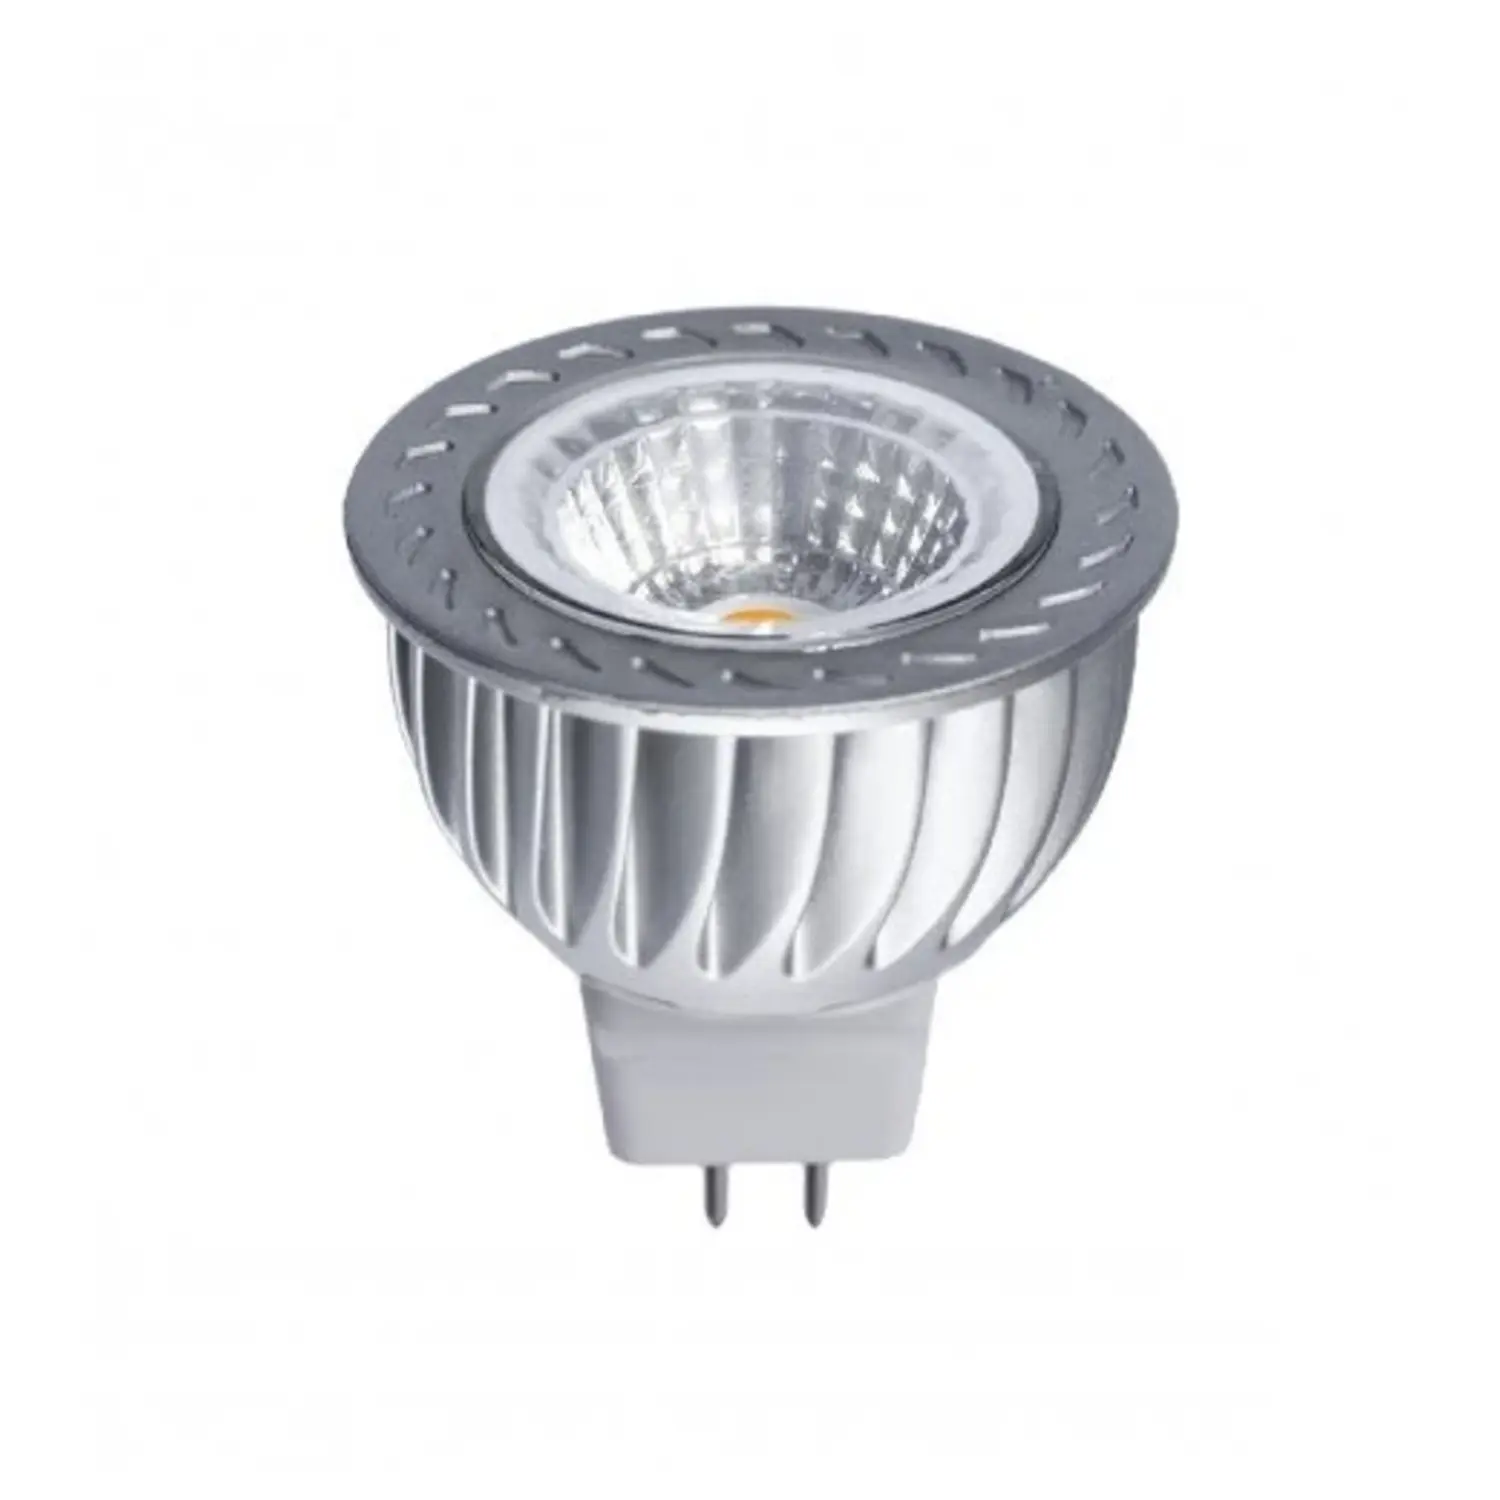 immagine del prodotto lampadina led cob GX5,3 CE bianco caldo 6 watt 38° 1 pezzo 12 volt spe woj13122